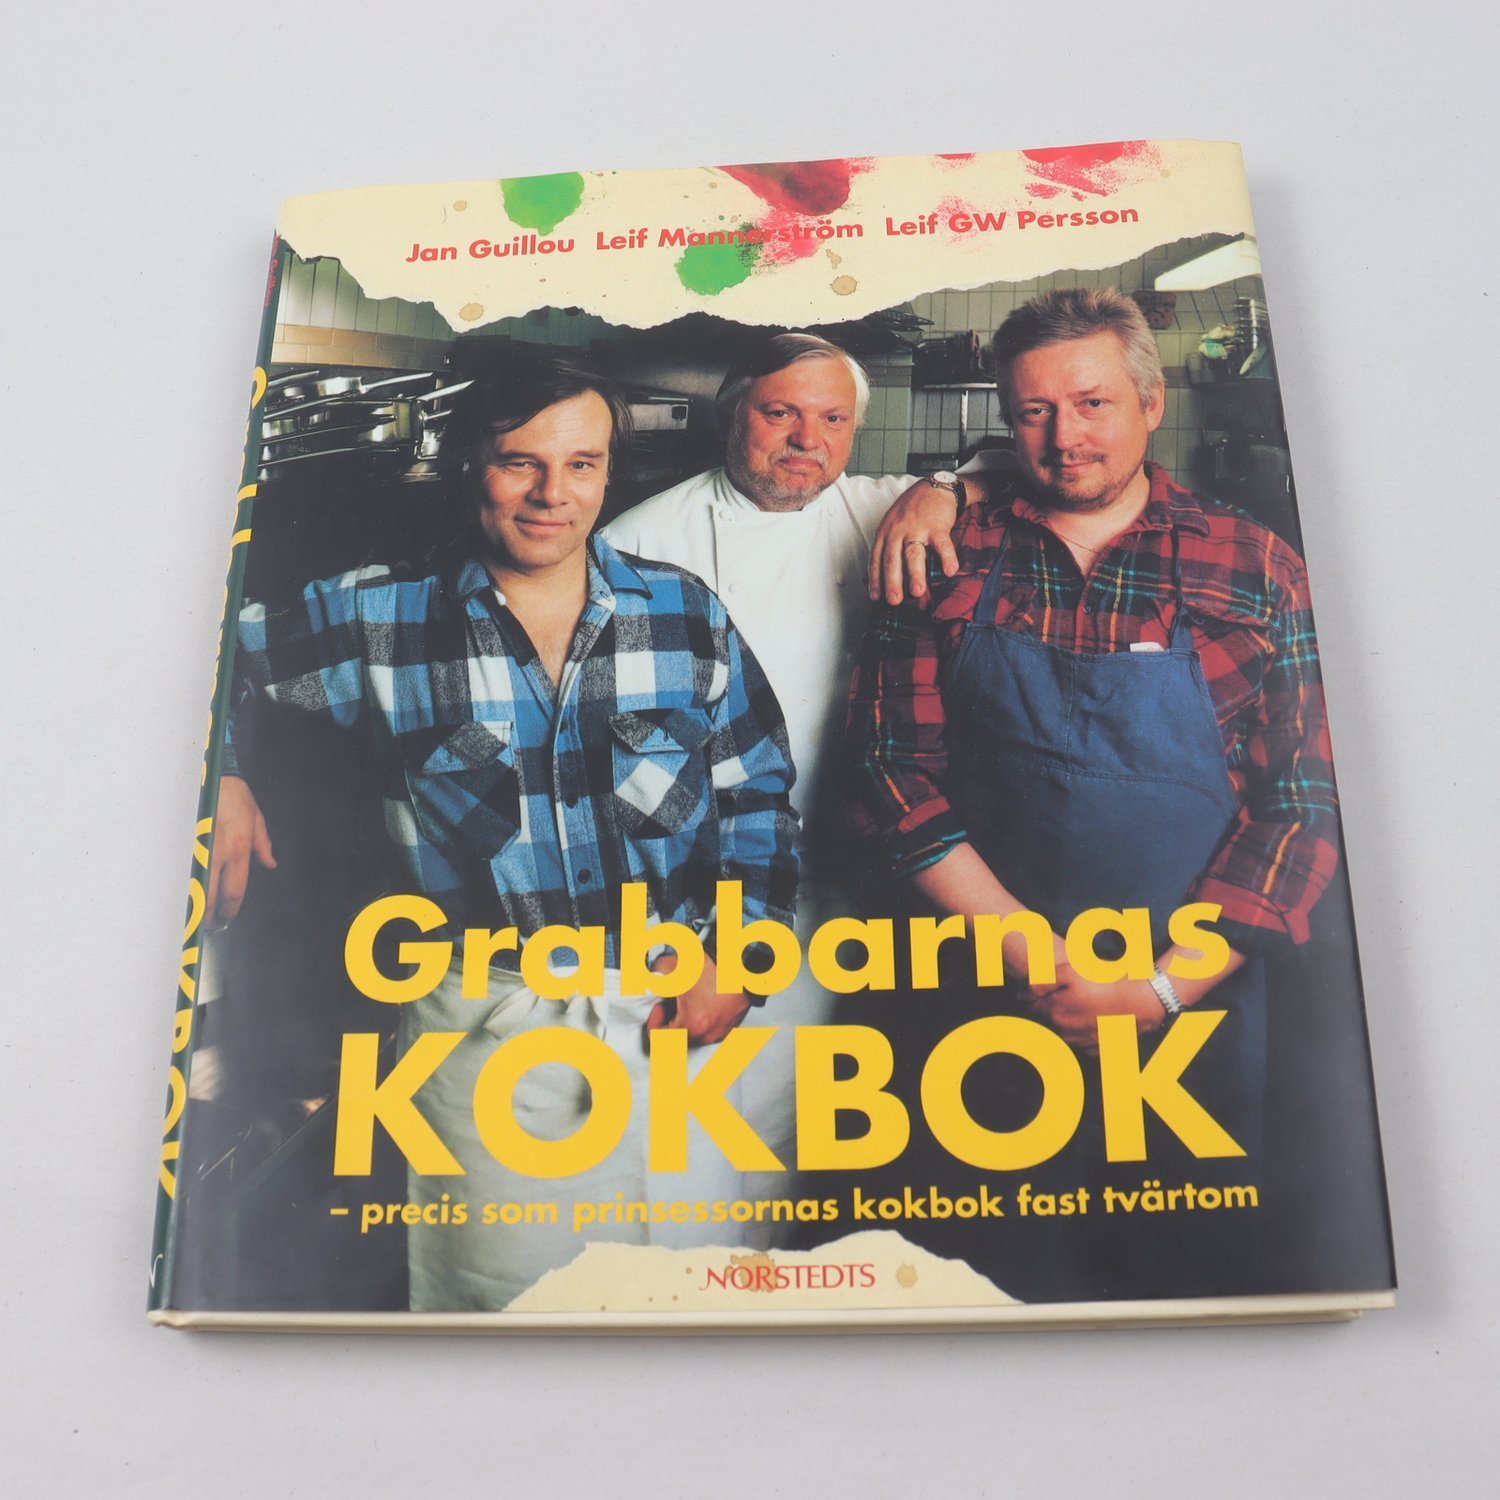 Grabbarnas kokbok, Jan Guillou, Leif Mannerström, Leif GW Persson